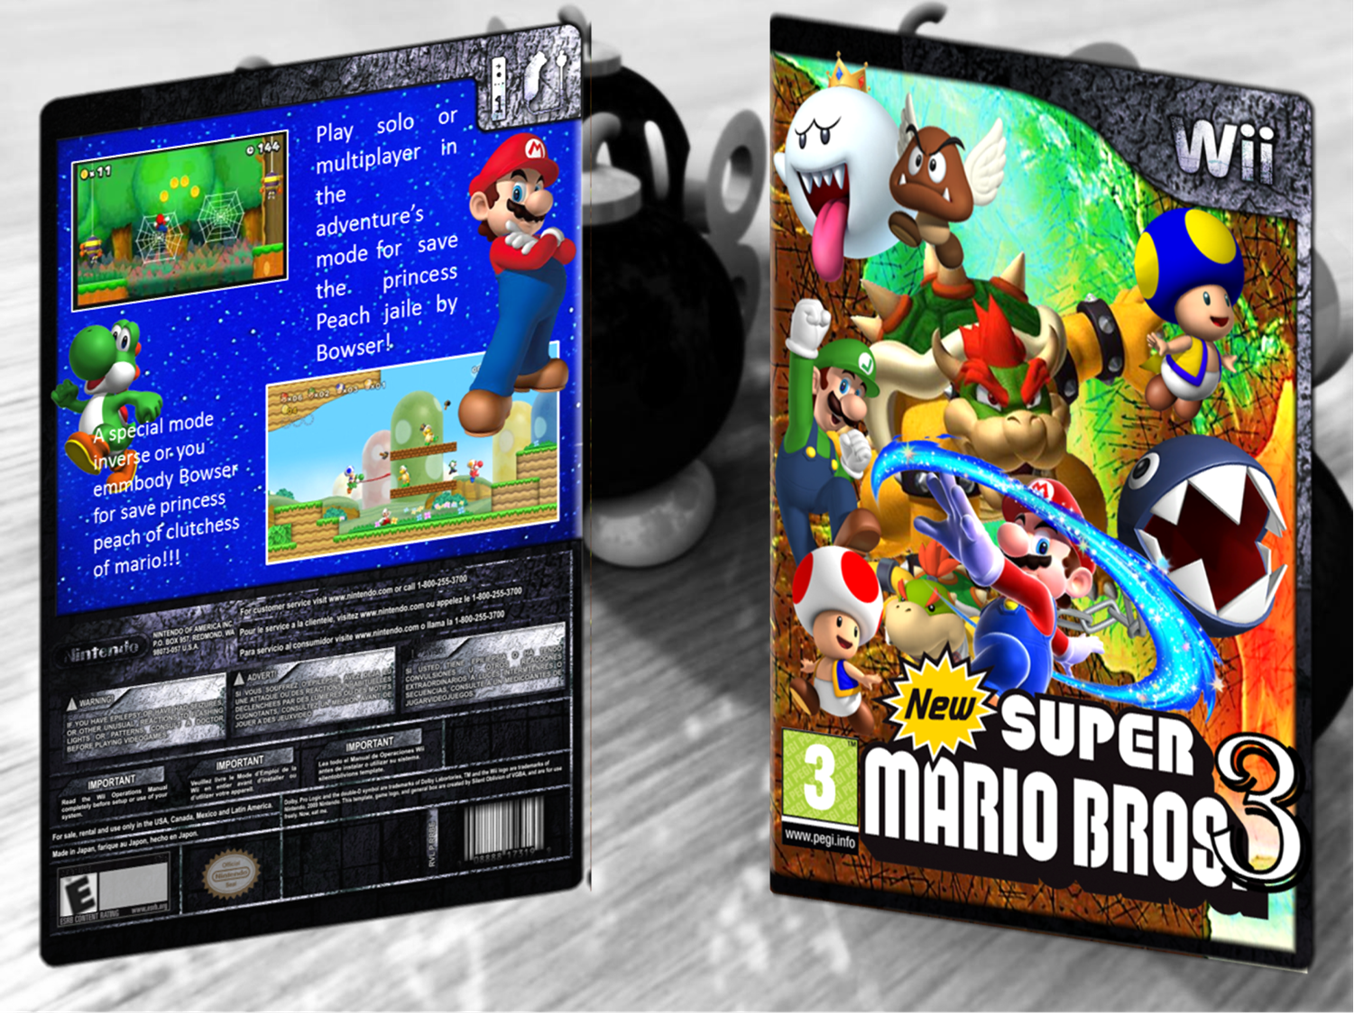 New Super Mario Bros 3 box cover